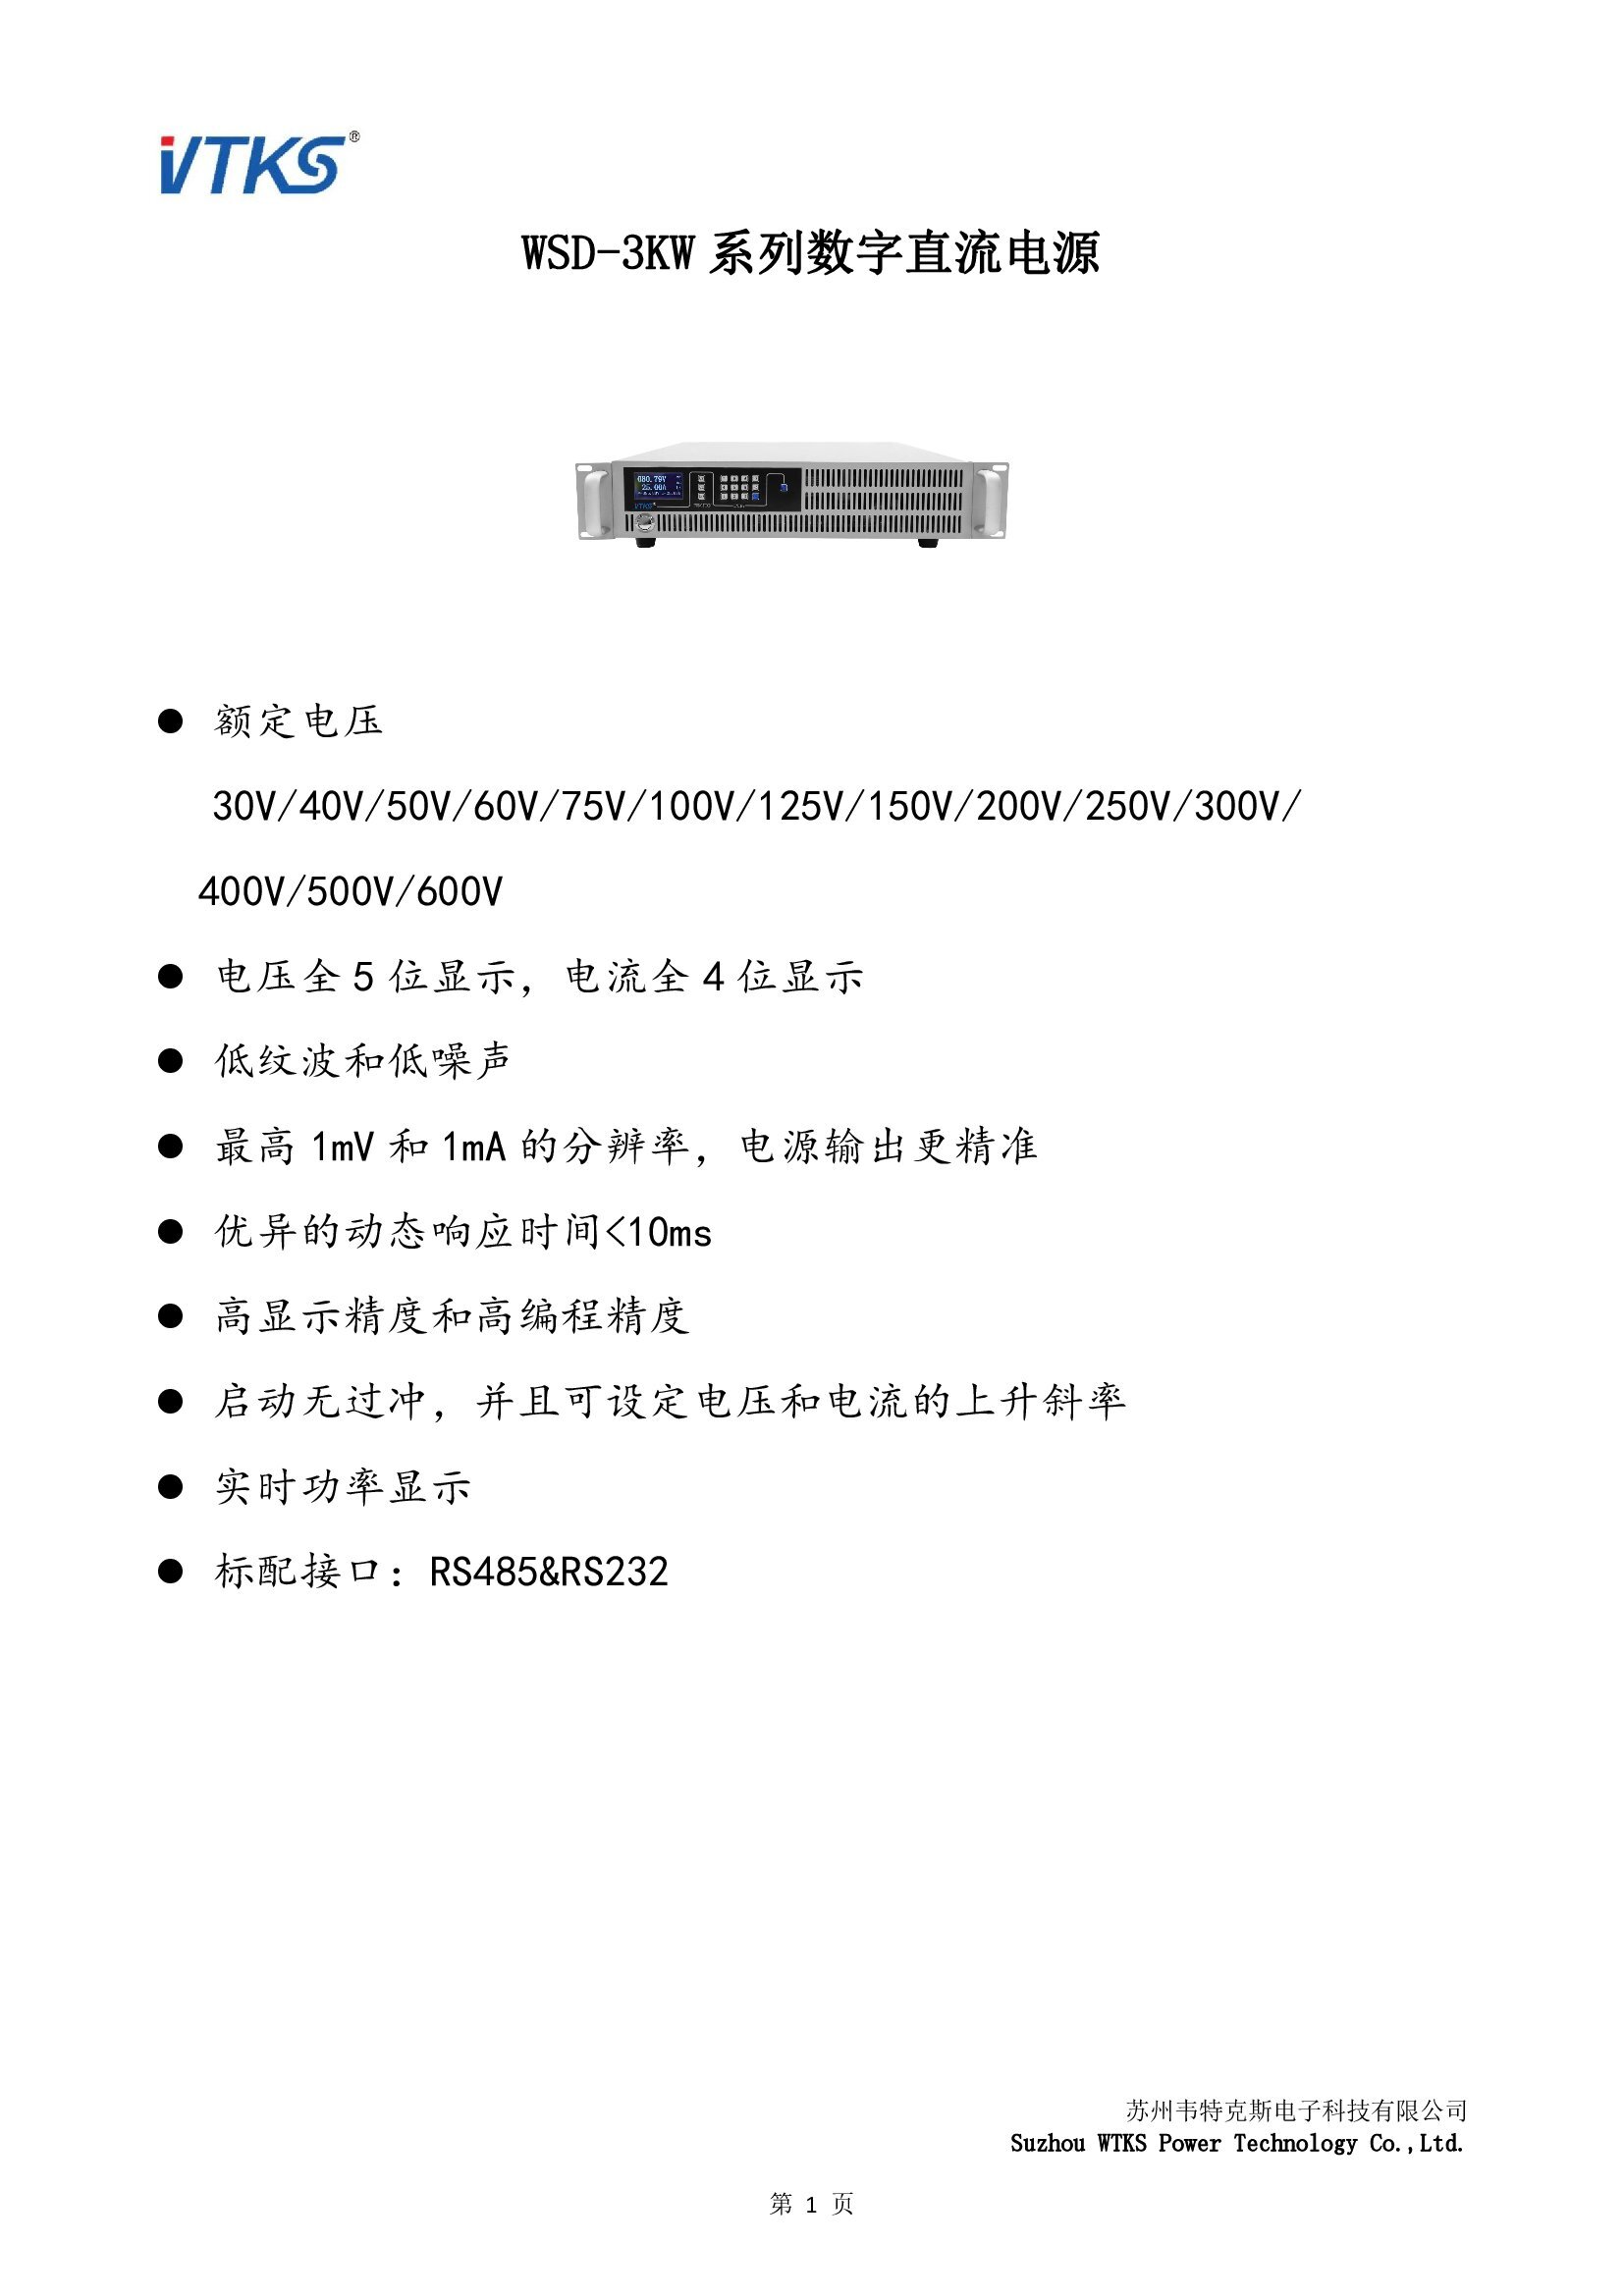 WSD-3KW系列数字直流电源技术资料_V1.06_00001.jpg